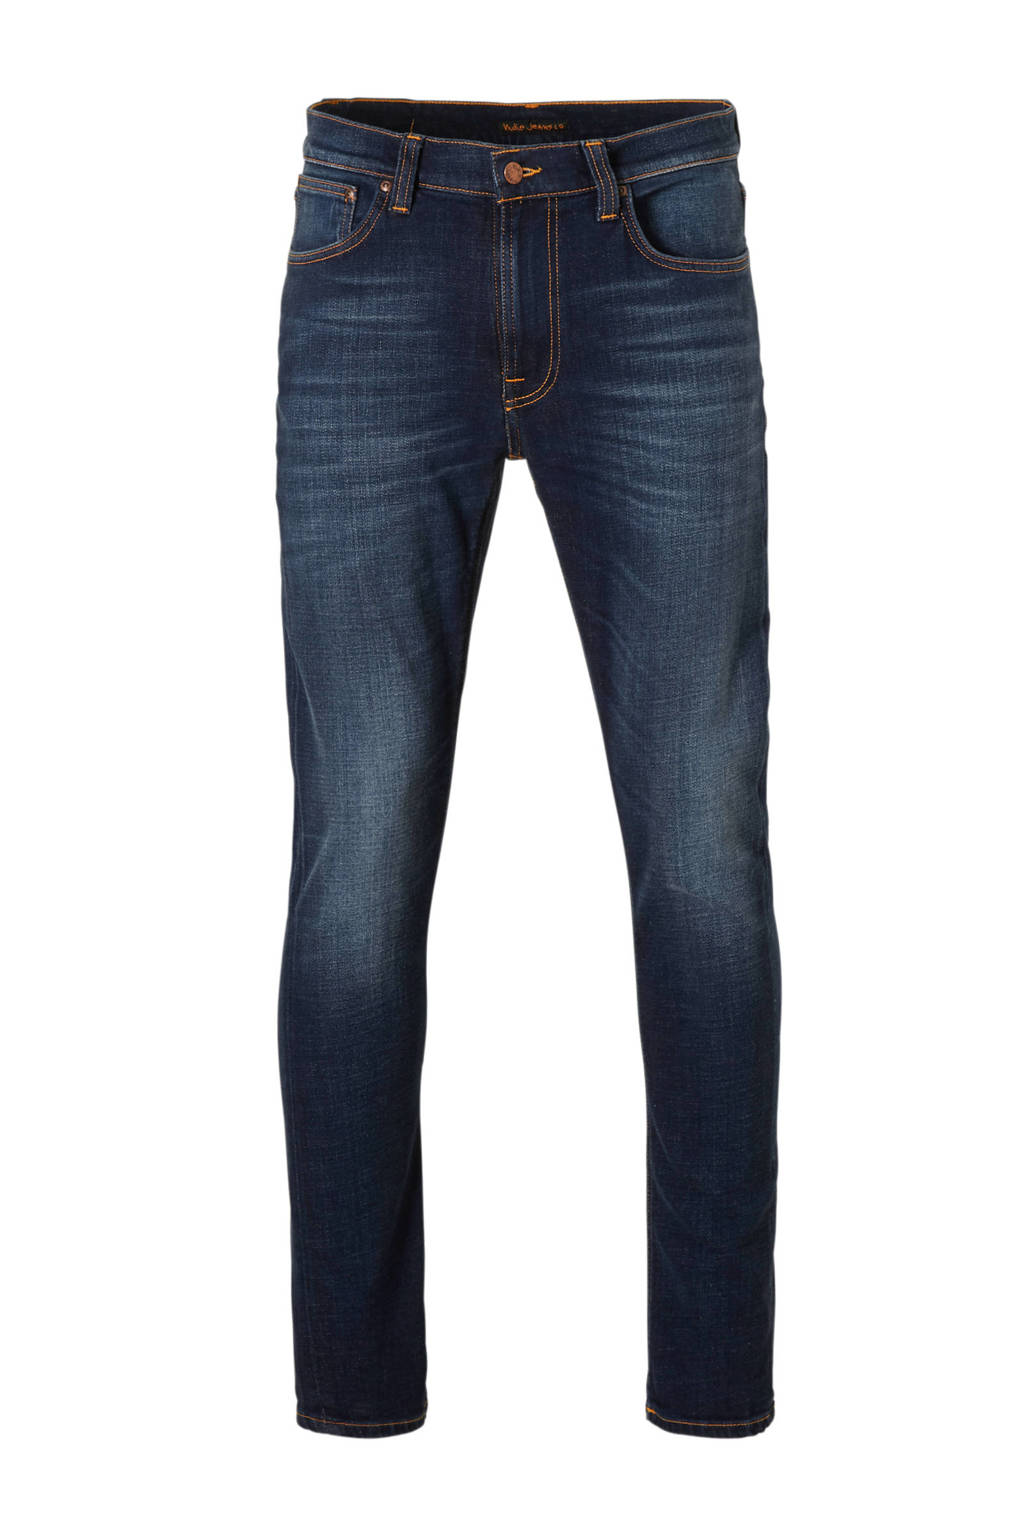 Nudie Jeans slim fit jeans Lean Dean dark deep worn, Dark deep worn